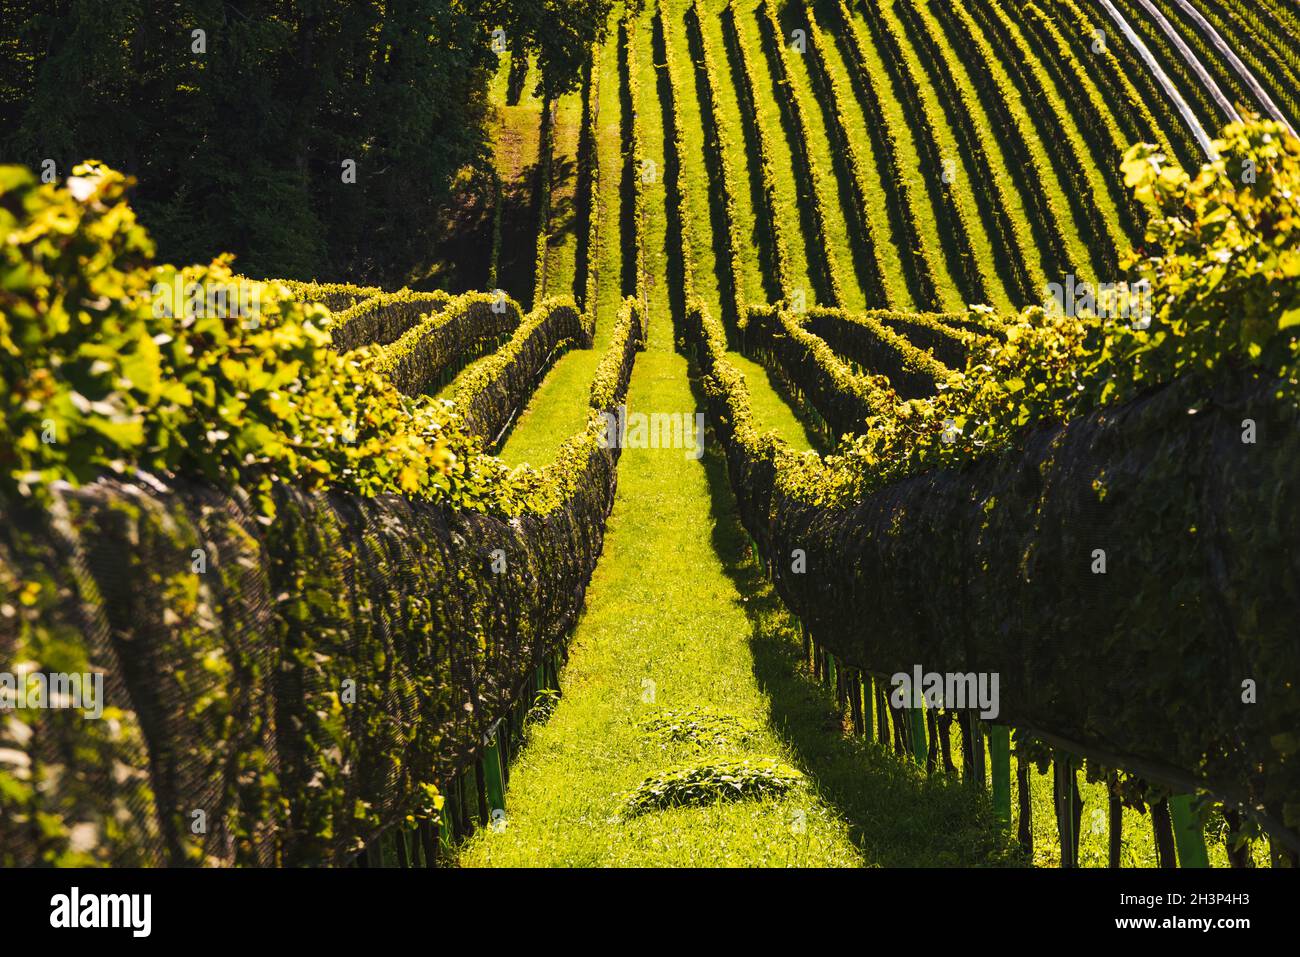 Die Ernte der Weinrebe wurde von der Weinstraße an der Grenze zu Österreich, Slowenien, durchgeführt. Stockfoto